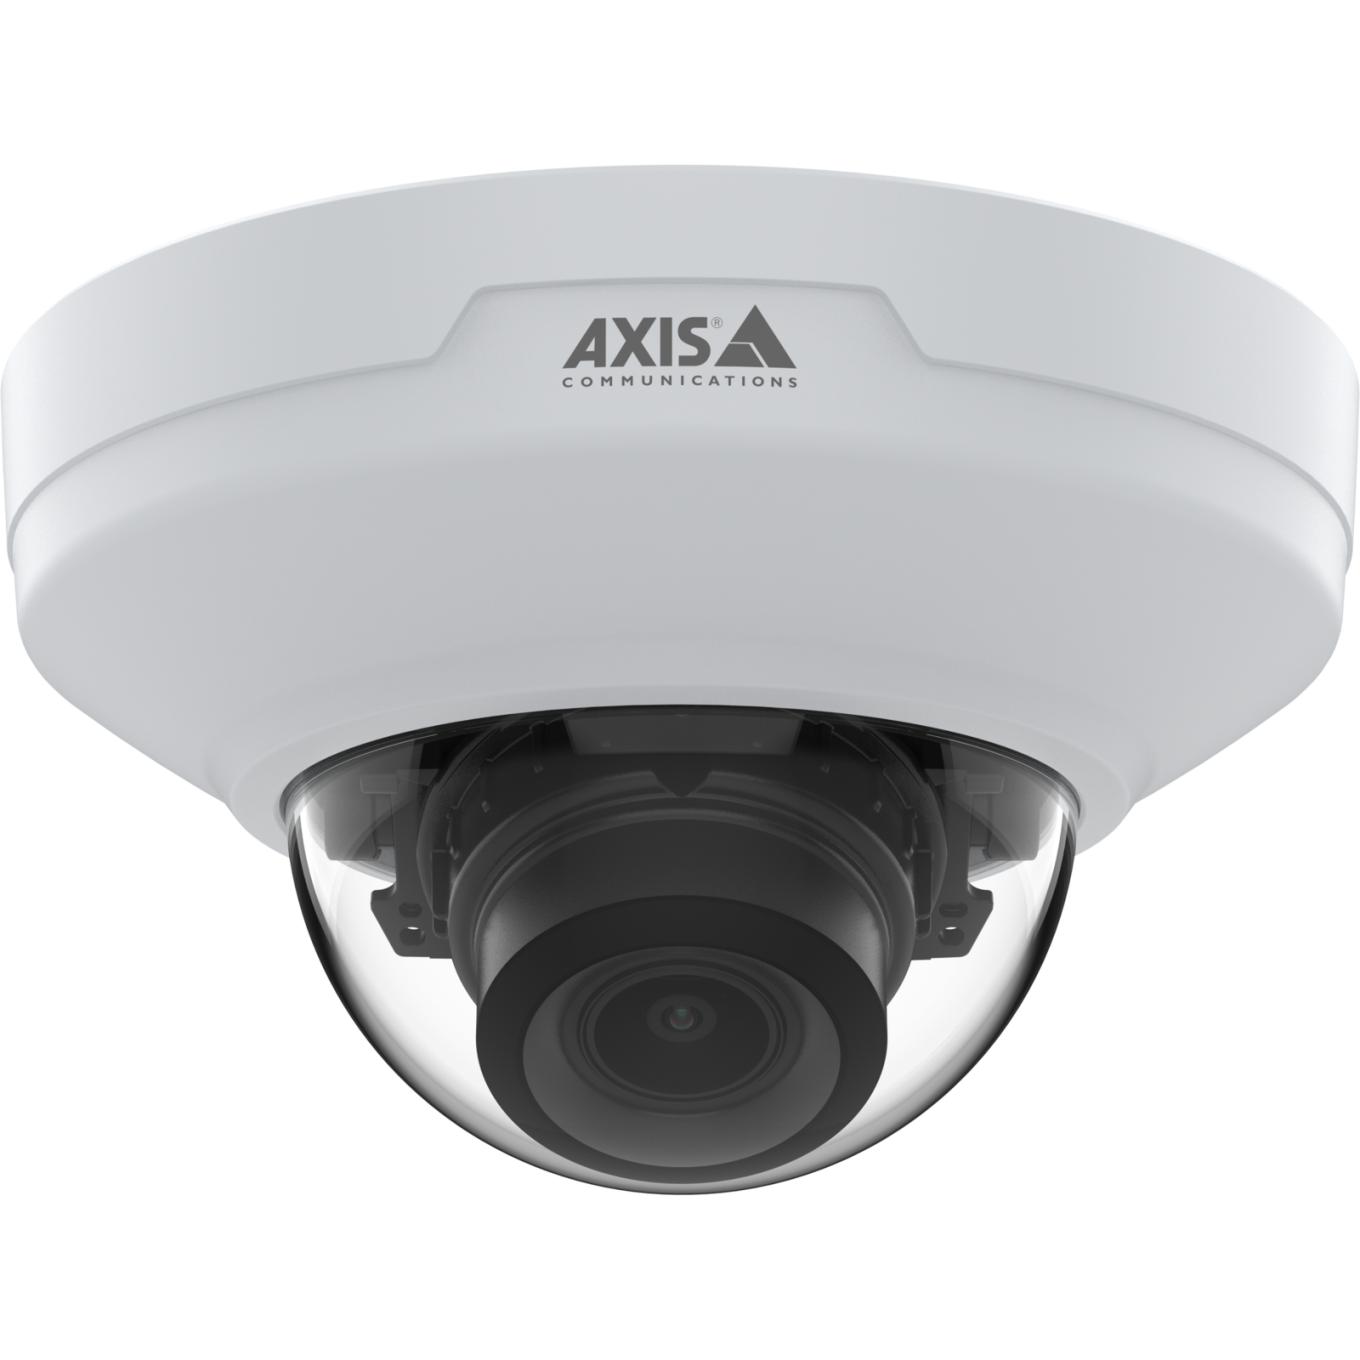 AXIS M4216-V Dome Camera, plafond, vue de face